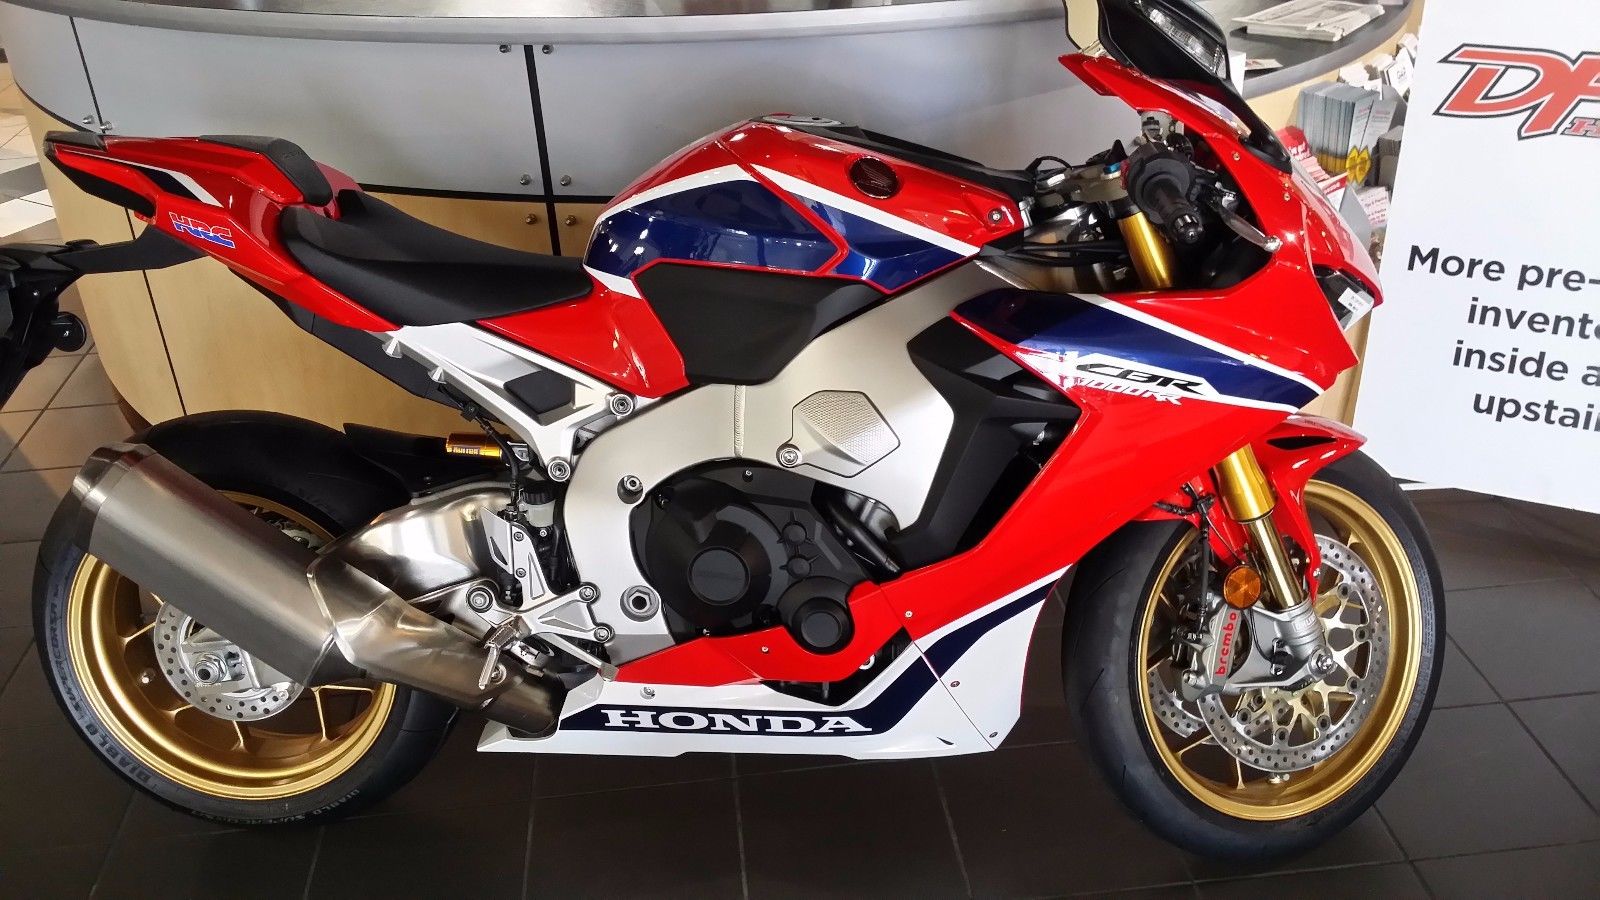  Honda - 5 motos exceptionnelles les plus chères vendues sur eBay